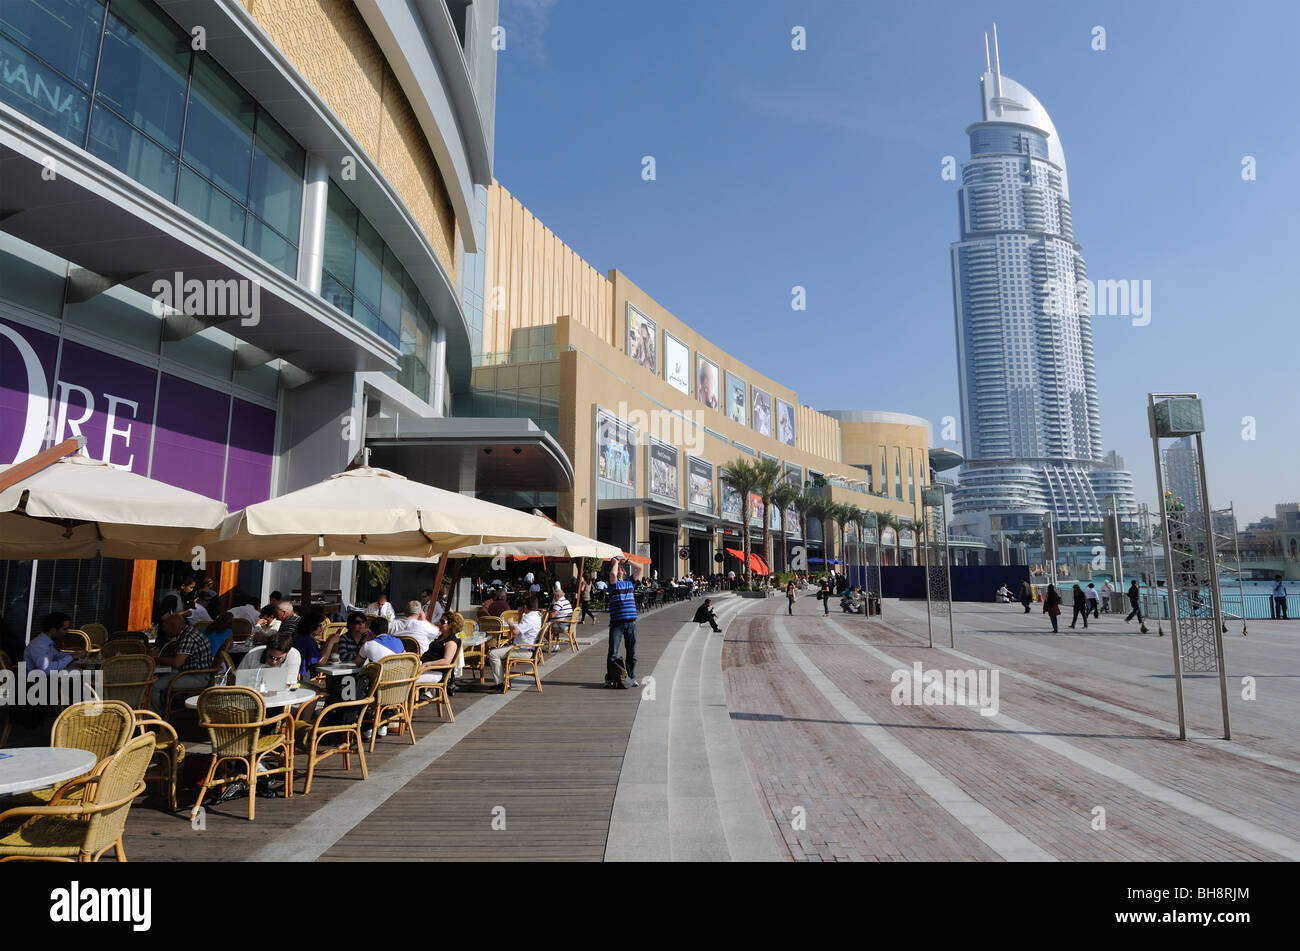 Cafe en el centro comercial Dubai Mall, Dubai, Emiratos Árabes Unidos Foto de stock